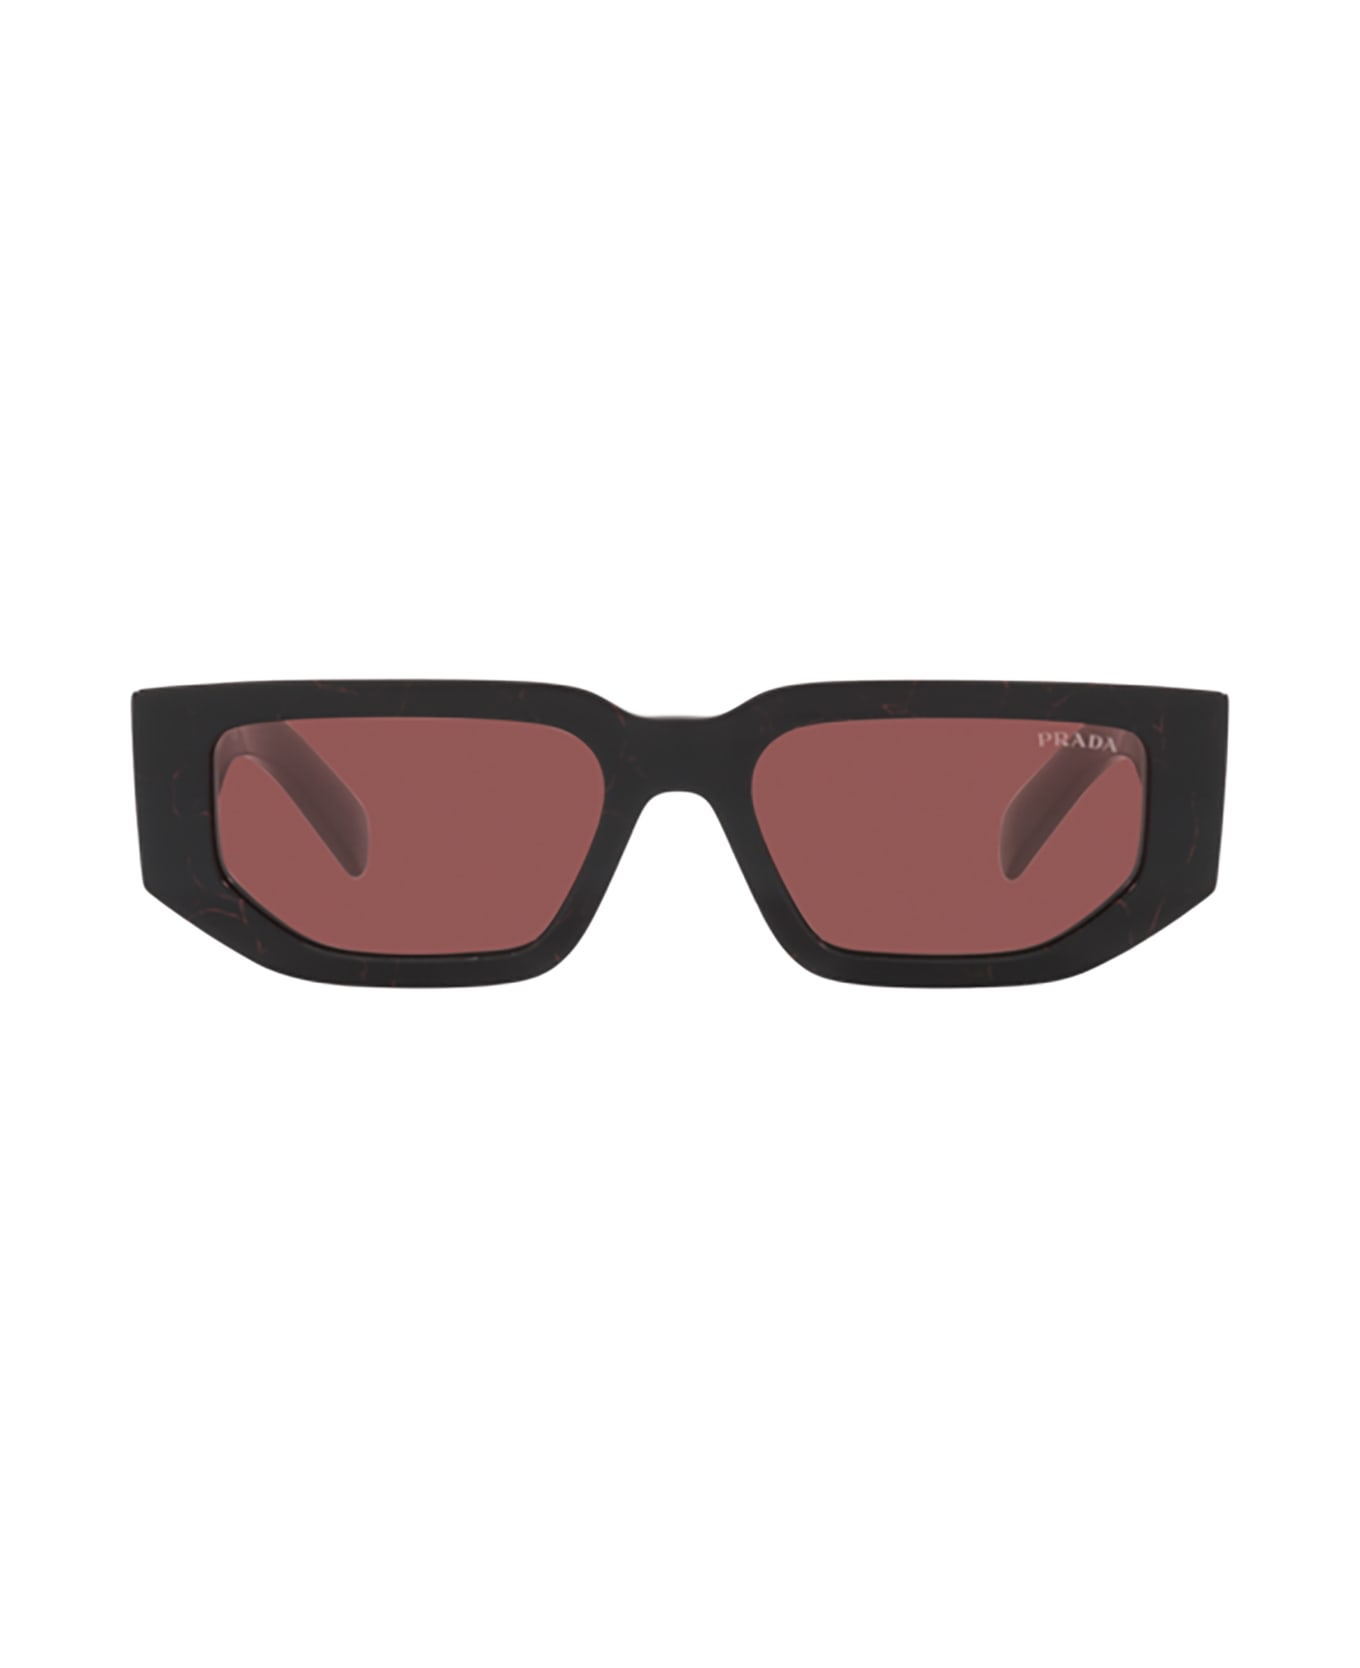 Prada Eyewear Pr 09zs Womens Michael Kors Sunglasses Sunglasses - Womens Michael Kors Sunglasses